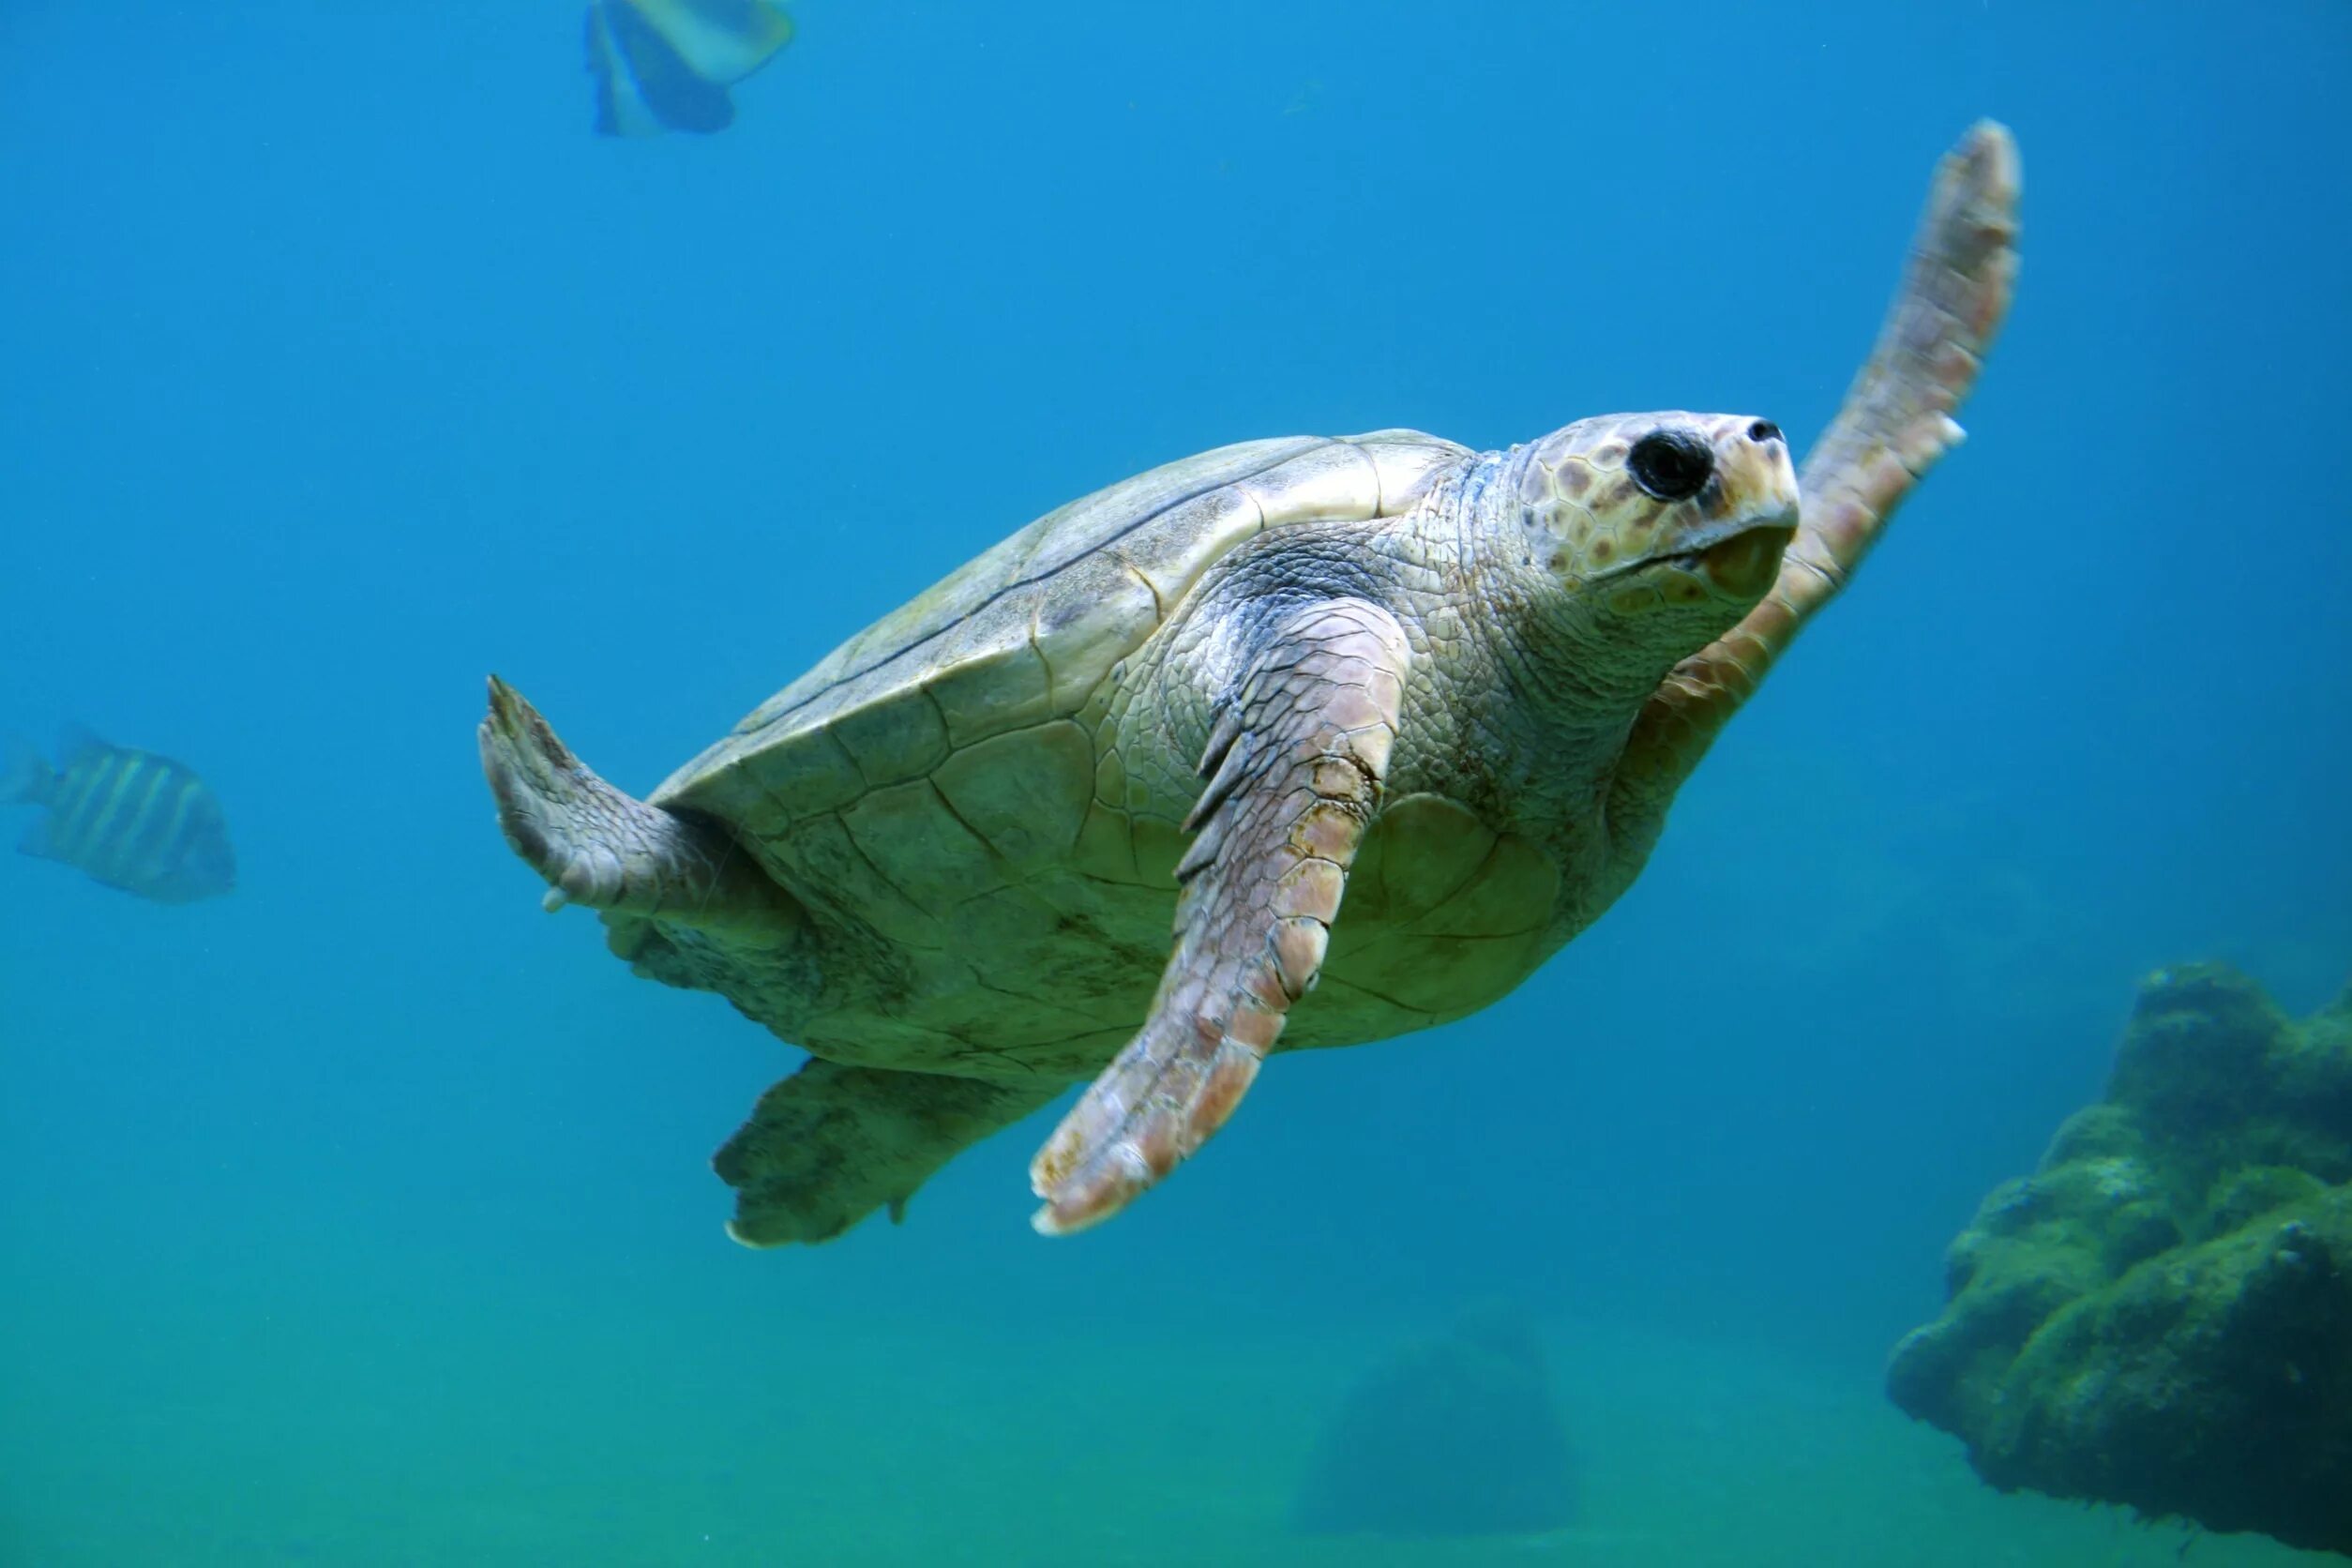 Морские обитатели морская черепаха. Морская черепаха Каретта. Морская черепаха логгерхед. Черепаха бисса (Каретта). Галапагосская черепаха морская.